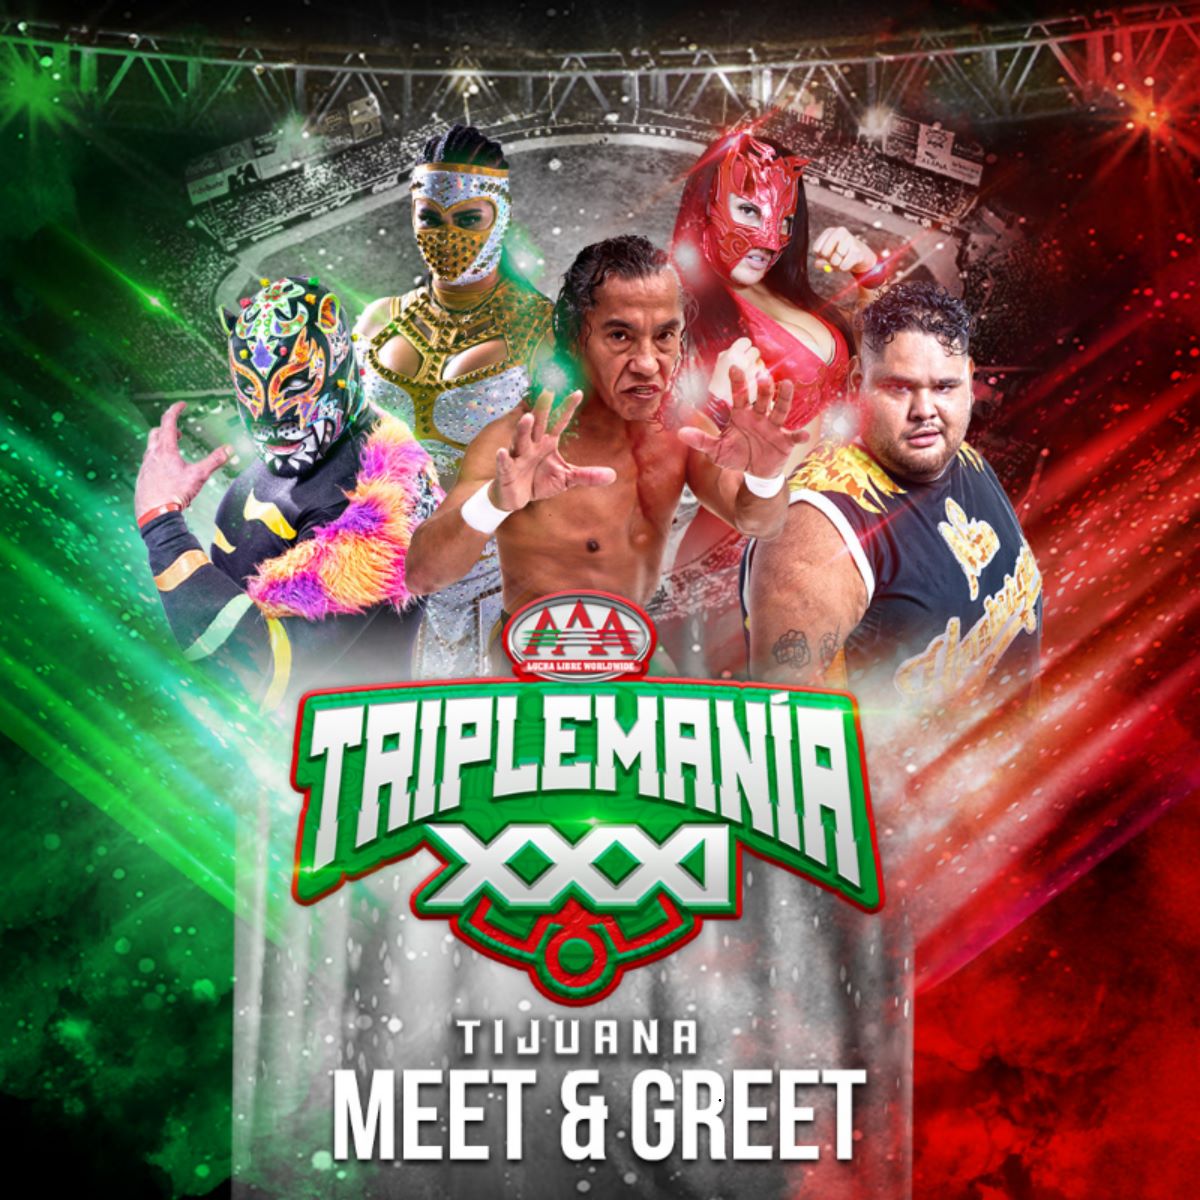 Asegura tu lugar para el Meet & Greet en #TriplemaníaXXXI Tijuana y conoce a tus luchadores favoritos del talento de #LuchaLibreAAA 🙌🏻

➡️ bit.ly/45RXNNb